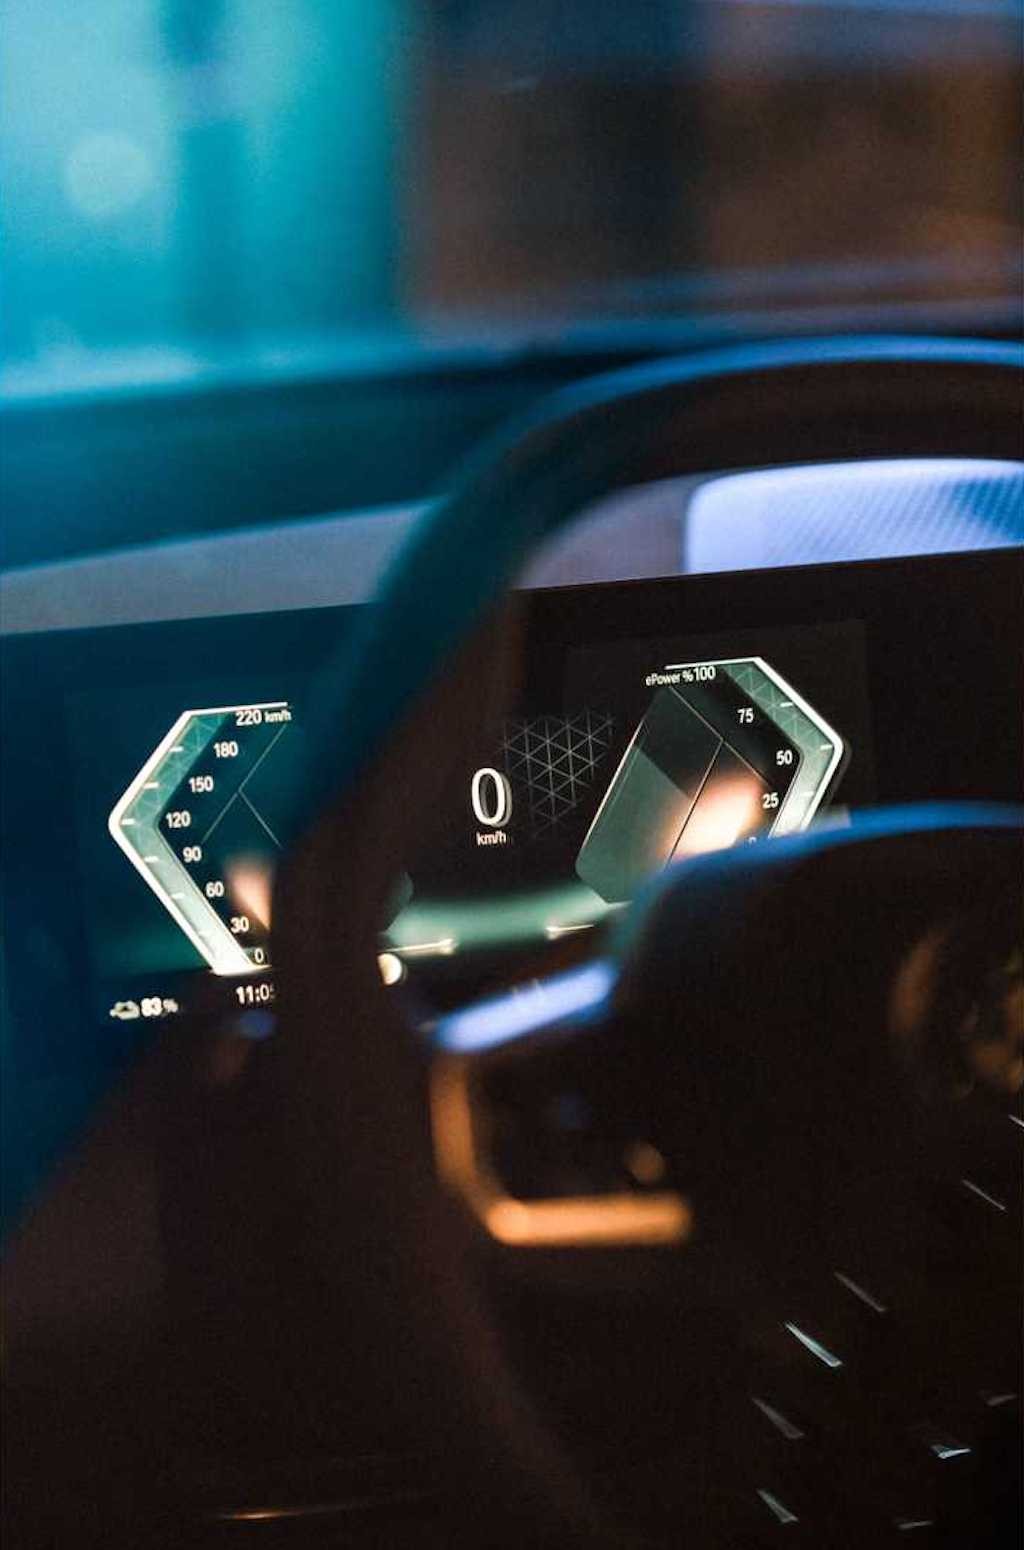 Mercedes khoe hệ thống giải trí nhiều màn hình cảm ứng, BMW vẫn trung thành với núm vặn nhưng... ảnh 5